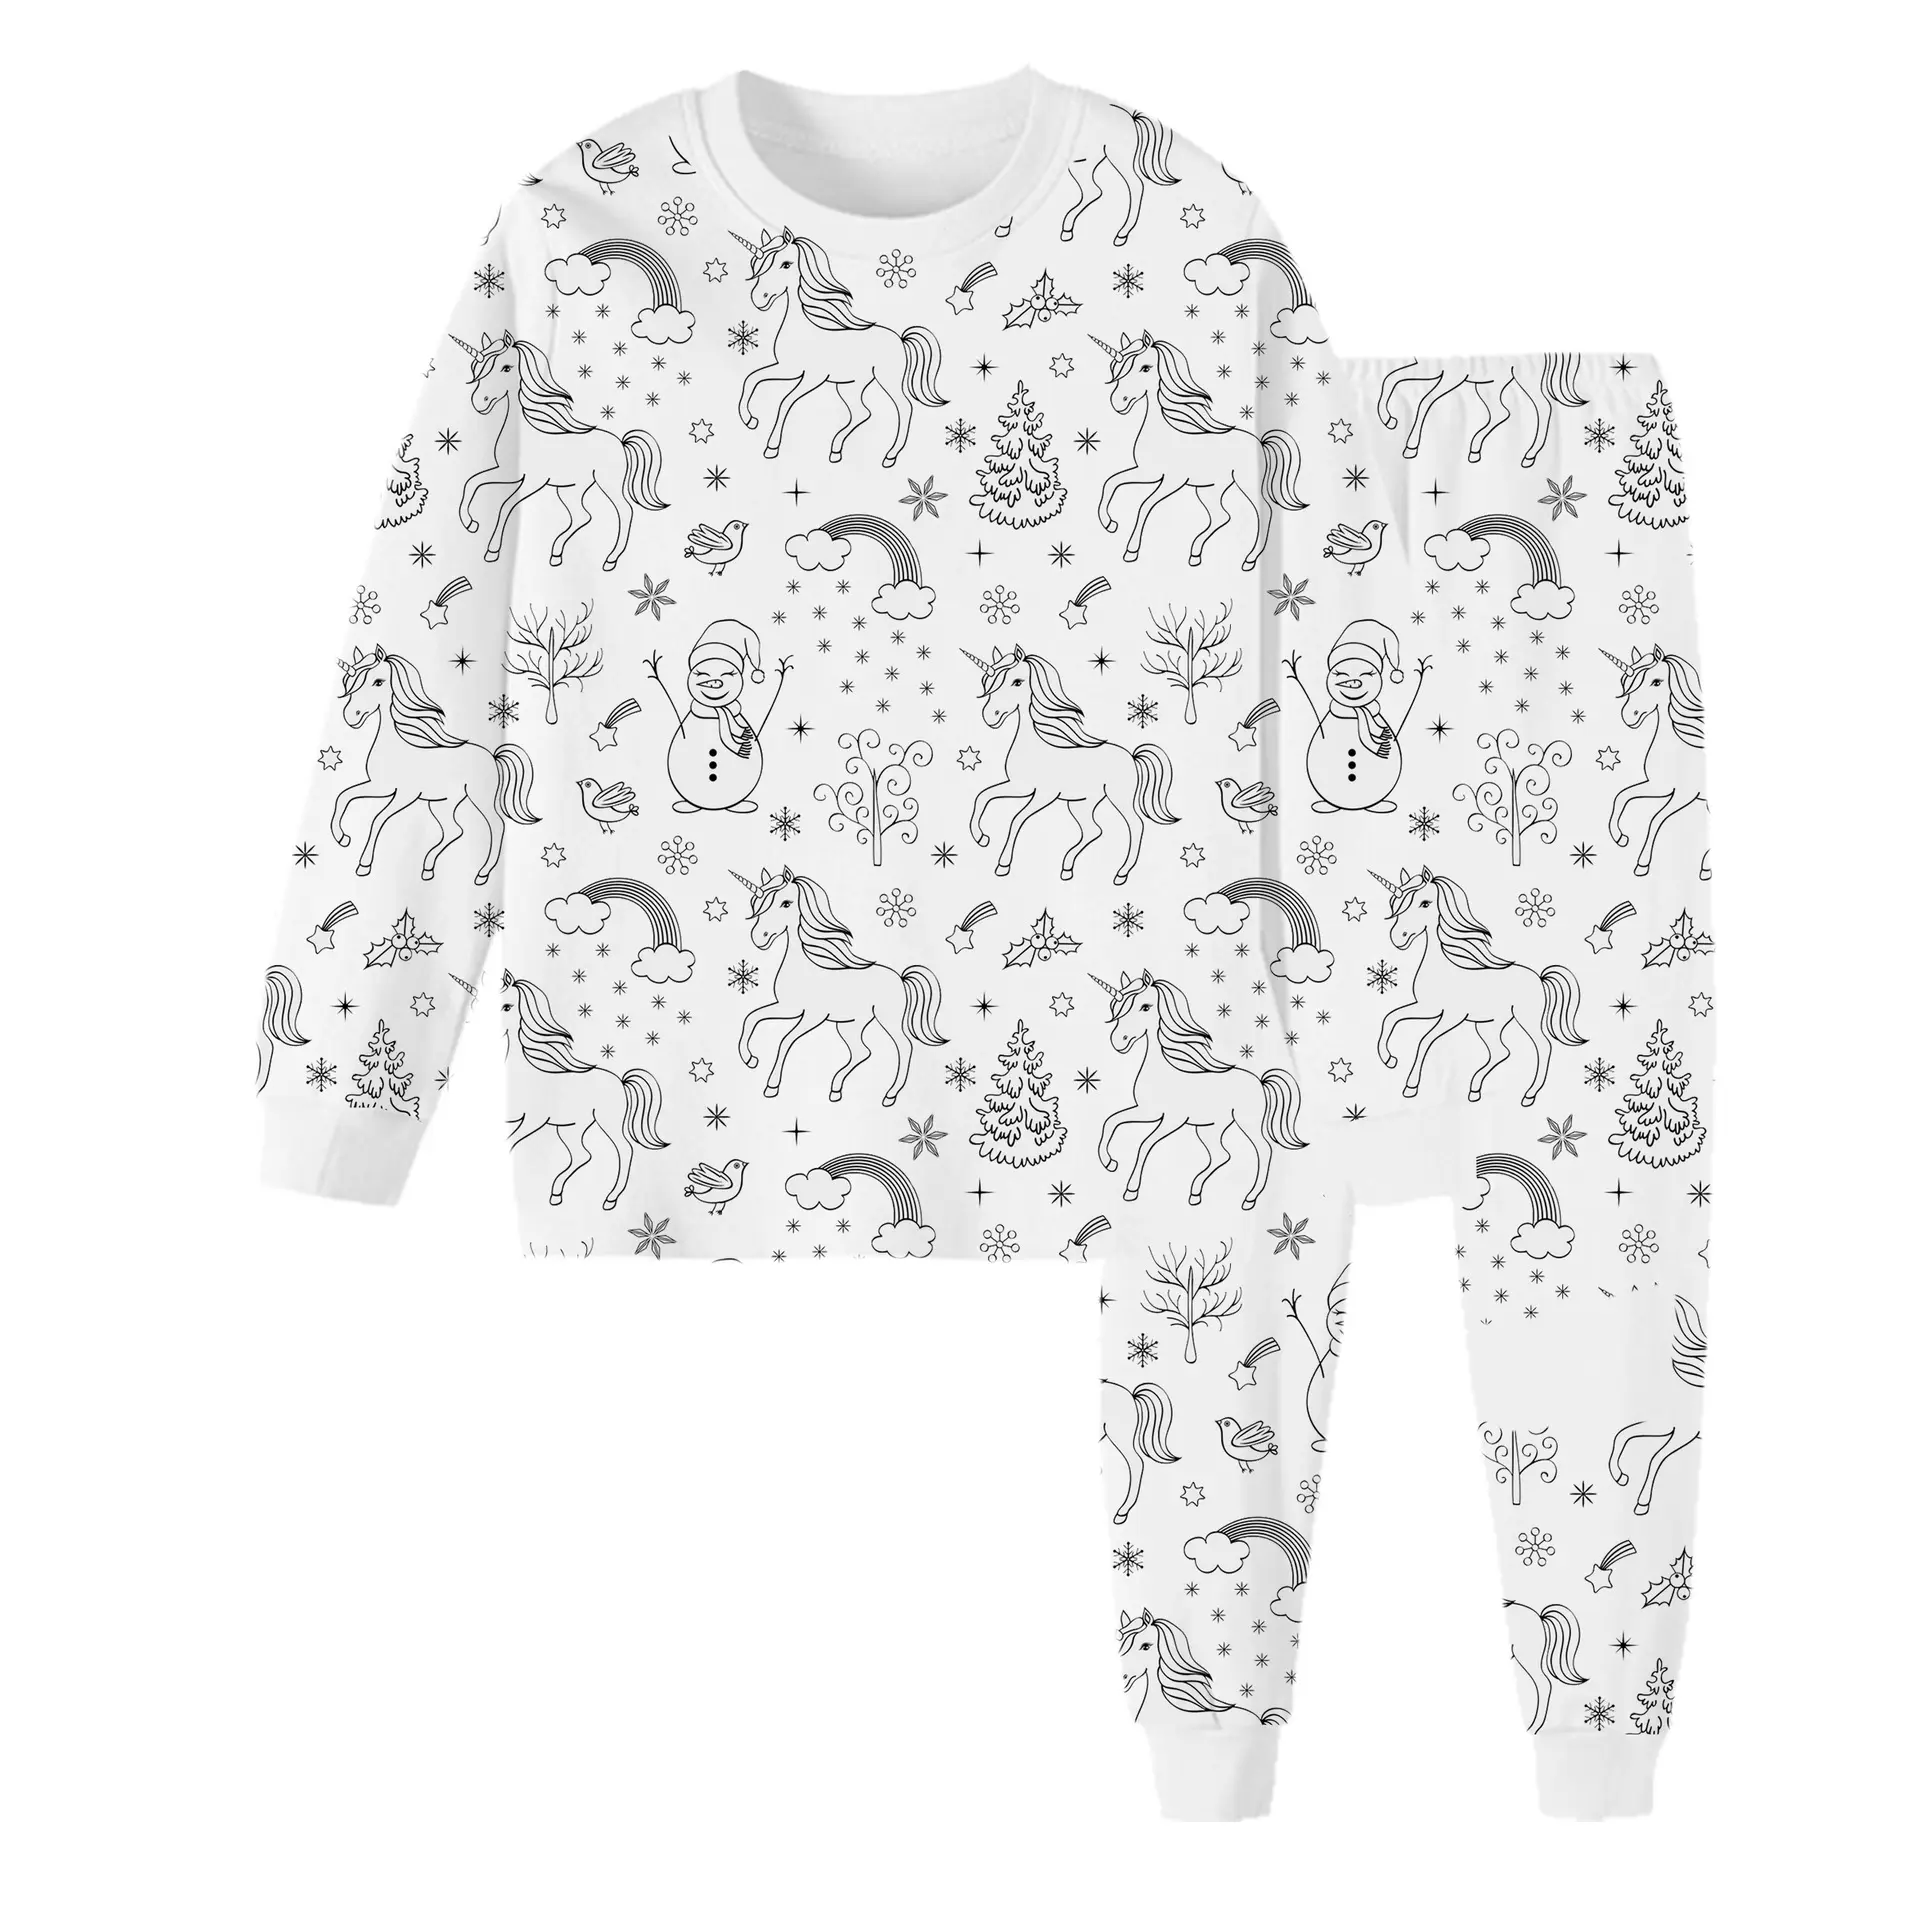 Unisex Graffiti pijama seti çocuklar için % 100% pamuk Loungewear özel çocuk pijama